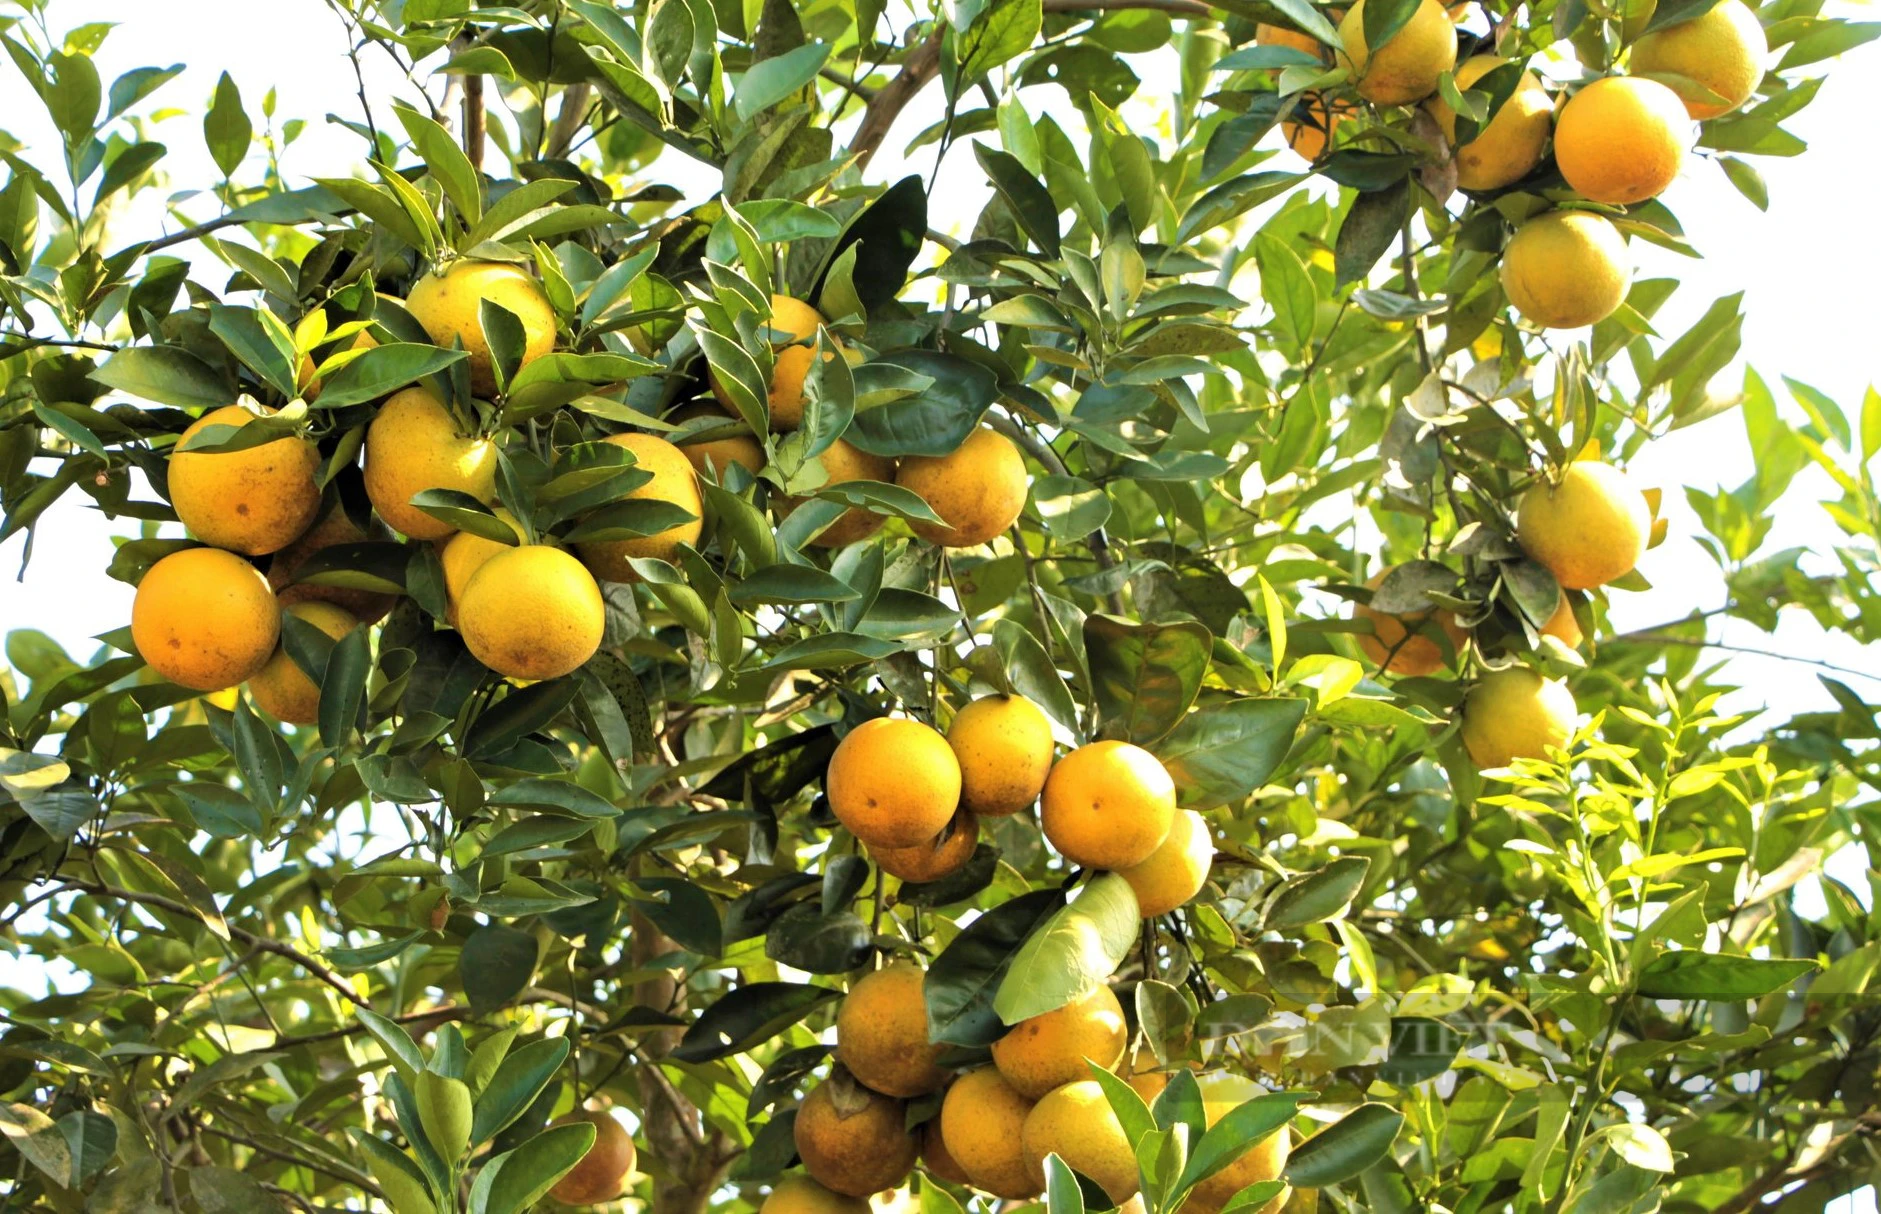 Trang trại hữu cơ trồng bạt ngàn cam và bưởi thơm, ngọt, sạch, lãi ròng hơn 1 tỷ đồng - Ảnh 2.